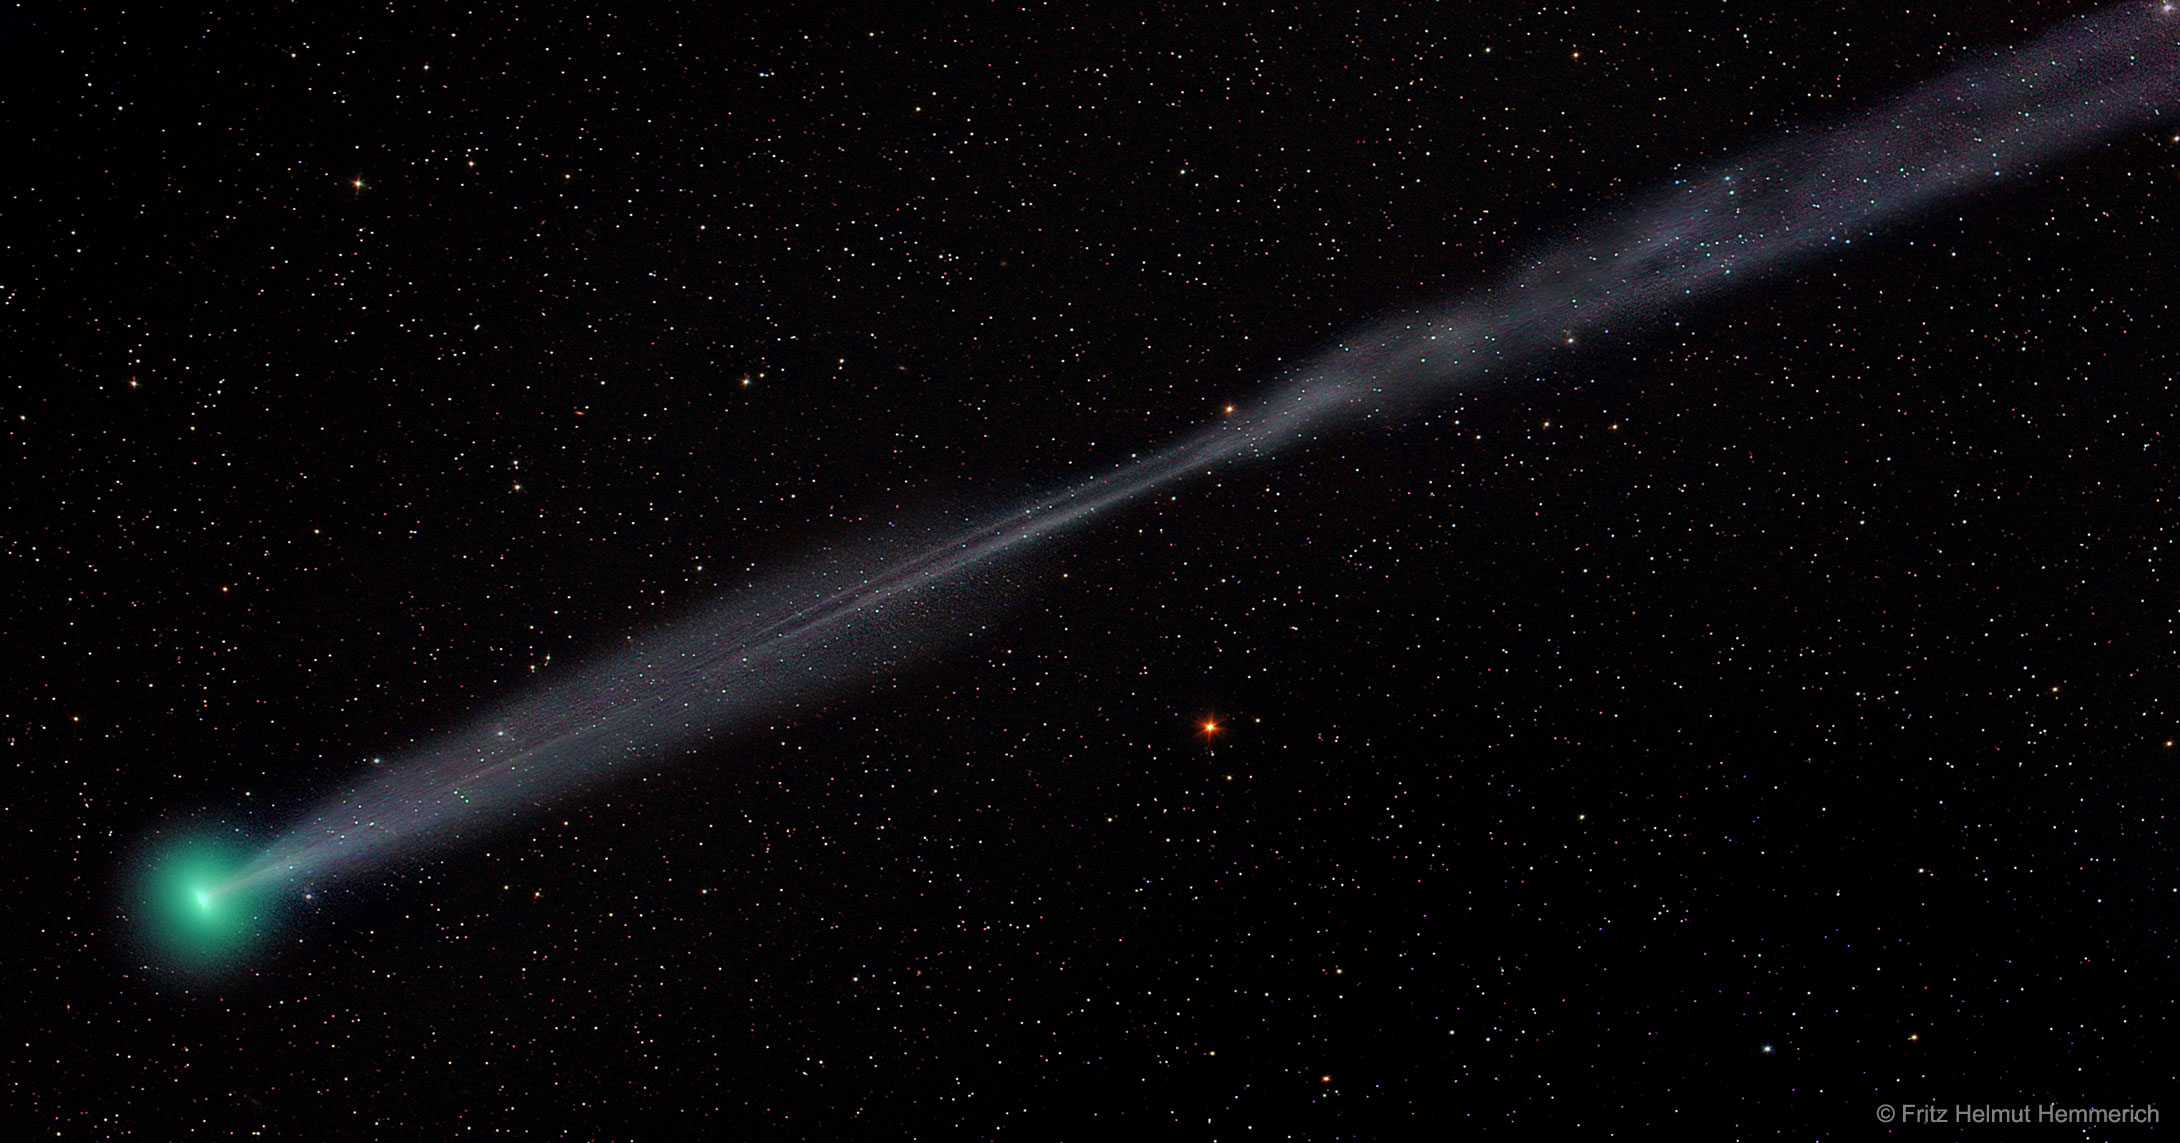 APOD: 2017 April 25 - A Split Ion Tail for Comet Lovejoy E4